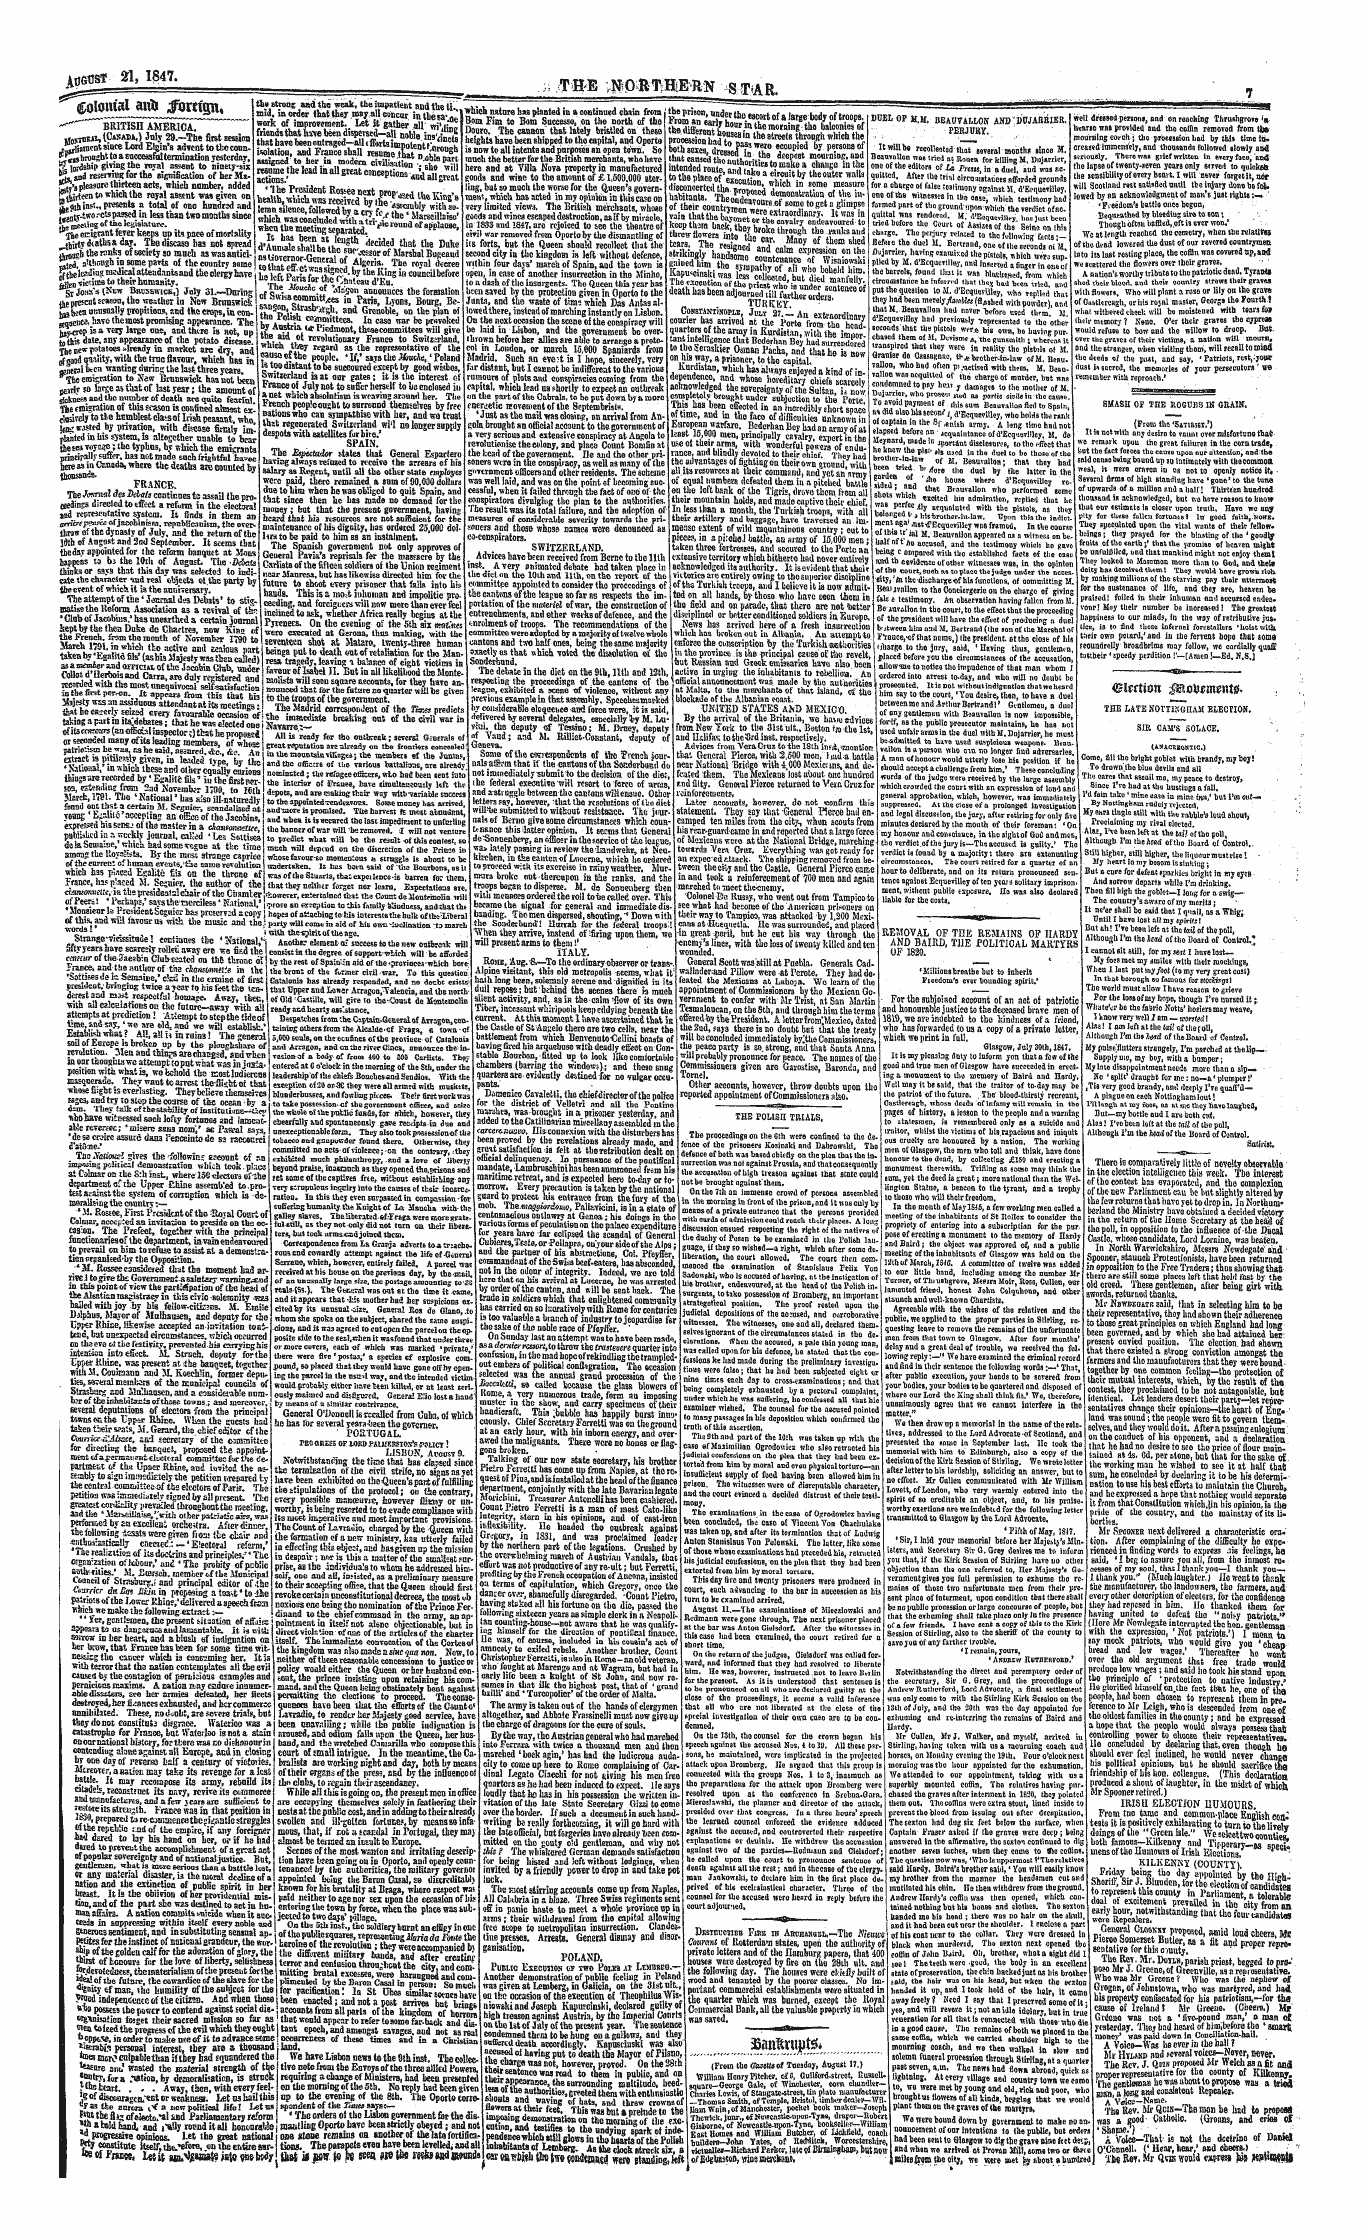 Northern Star (1837-1852): jS F Y, 1st edition - Colomal Aitij #Ort(Gn, (Cnlomai Aiti J Ifomem.